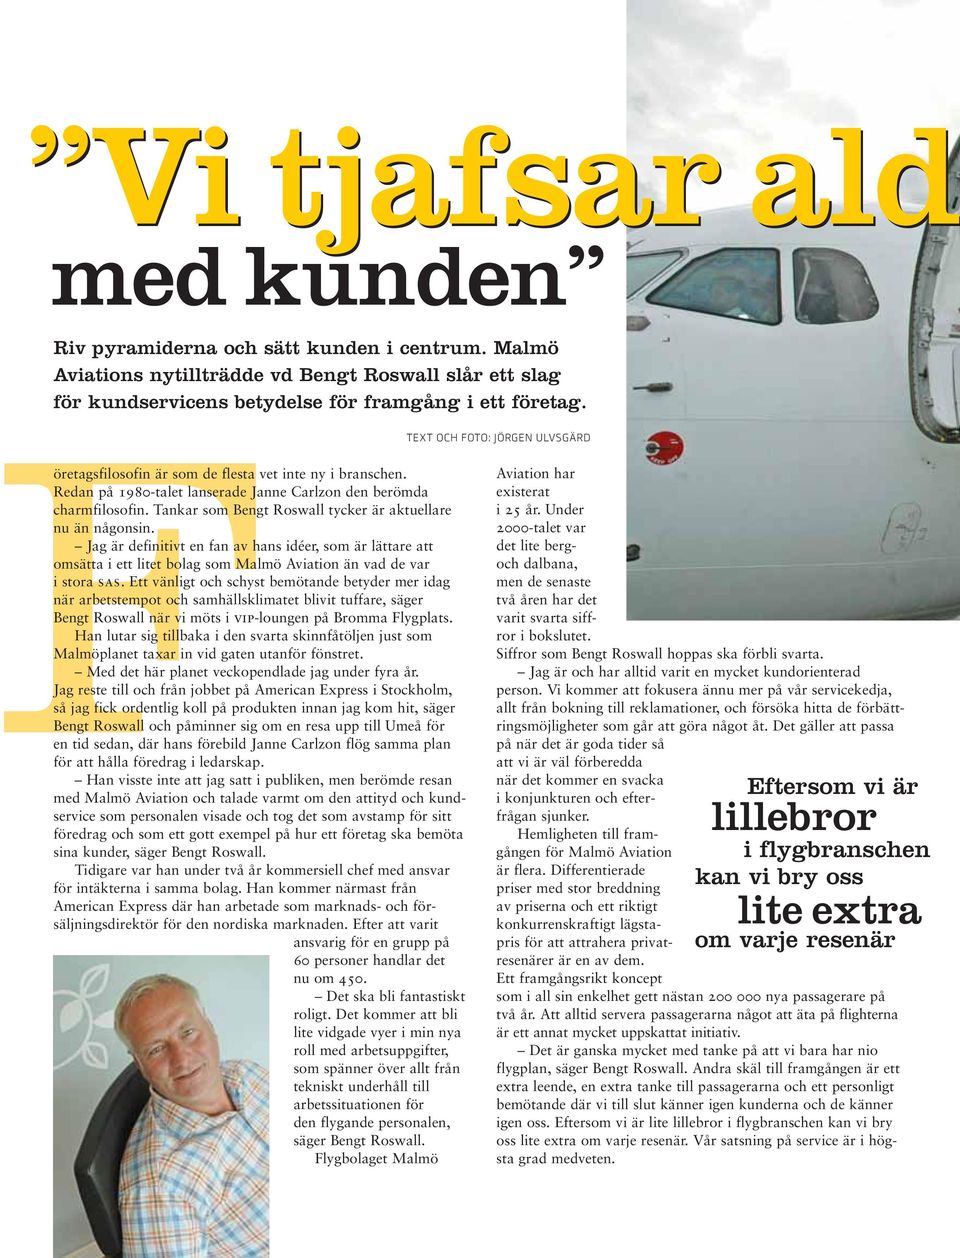 Tankar som Bengt Roswall tycker är aktuellare nu än någonsin. Jag är definitivt en fan av hans idéer, som är lättare att omsätta i ett litet bolag som Malmö Aviation än vad de var i stora sas.